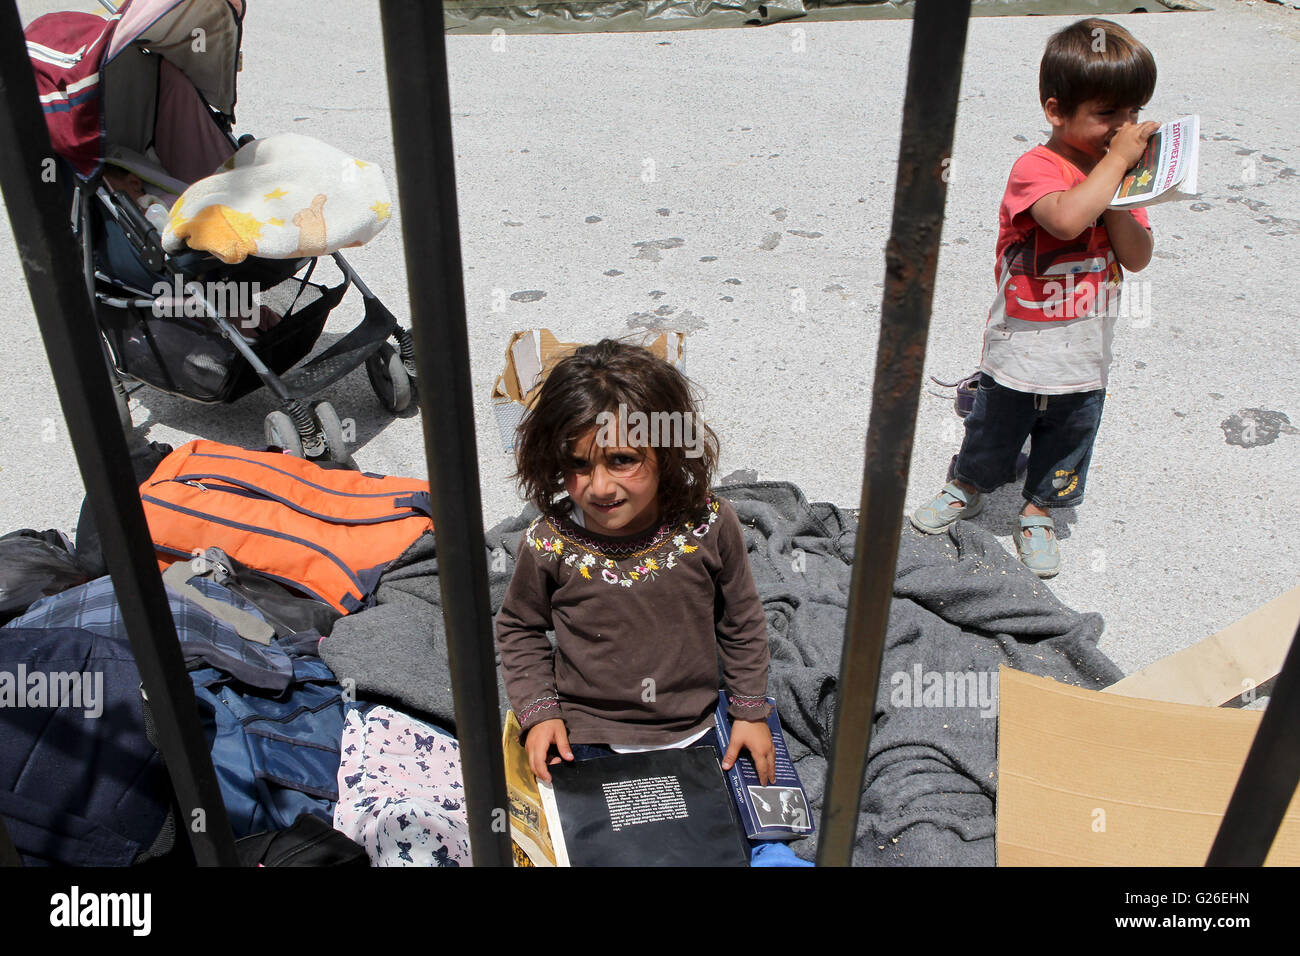 (160525) -- Thessalonique(Grèce), le 25 mai 2016 (Xinhua) -- les enfants réfugiés sont représentés à l'intérieur du nouveau centre d'accueil des réfugiés organisé de Derveni grec près de nord de la ville de Thessalonique, le 25 mai 2016. Lors d'une opération de police lancée le mardi, des milliers de réfugiés ont été réinstallés dans le camp de réfugiés de fortune d'Idomeni à la frontière entre la Grèce et l'ex-République yougoslave de Macédoine (ARYM) aux environs des installations de réception. (Xinhua/Marios Lolos) Banque D'Images